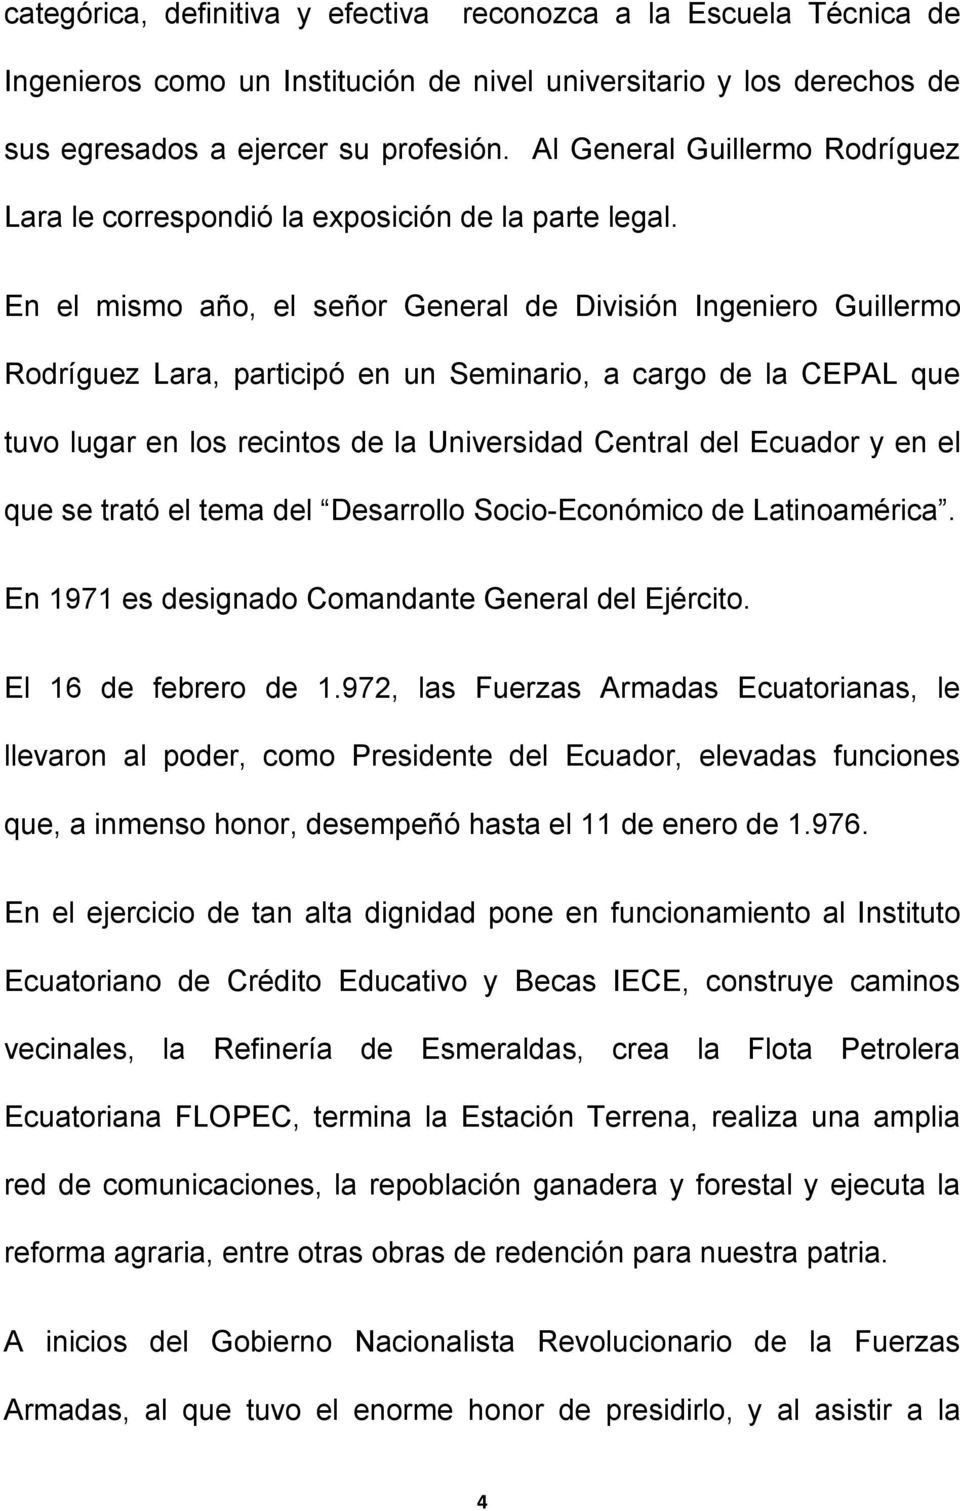 En el mismo año, el señor General de División Ingeniero Guillermo Rodríguez Lara, participó en un Seminario, a cargo de la CEPAL que tuvo lugar en los recintos de la Universidad Central del Ecuador y